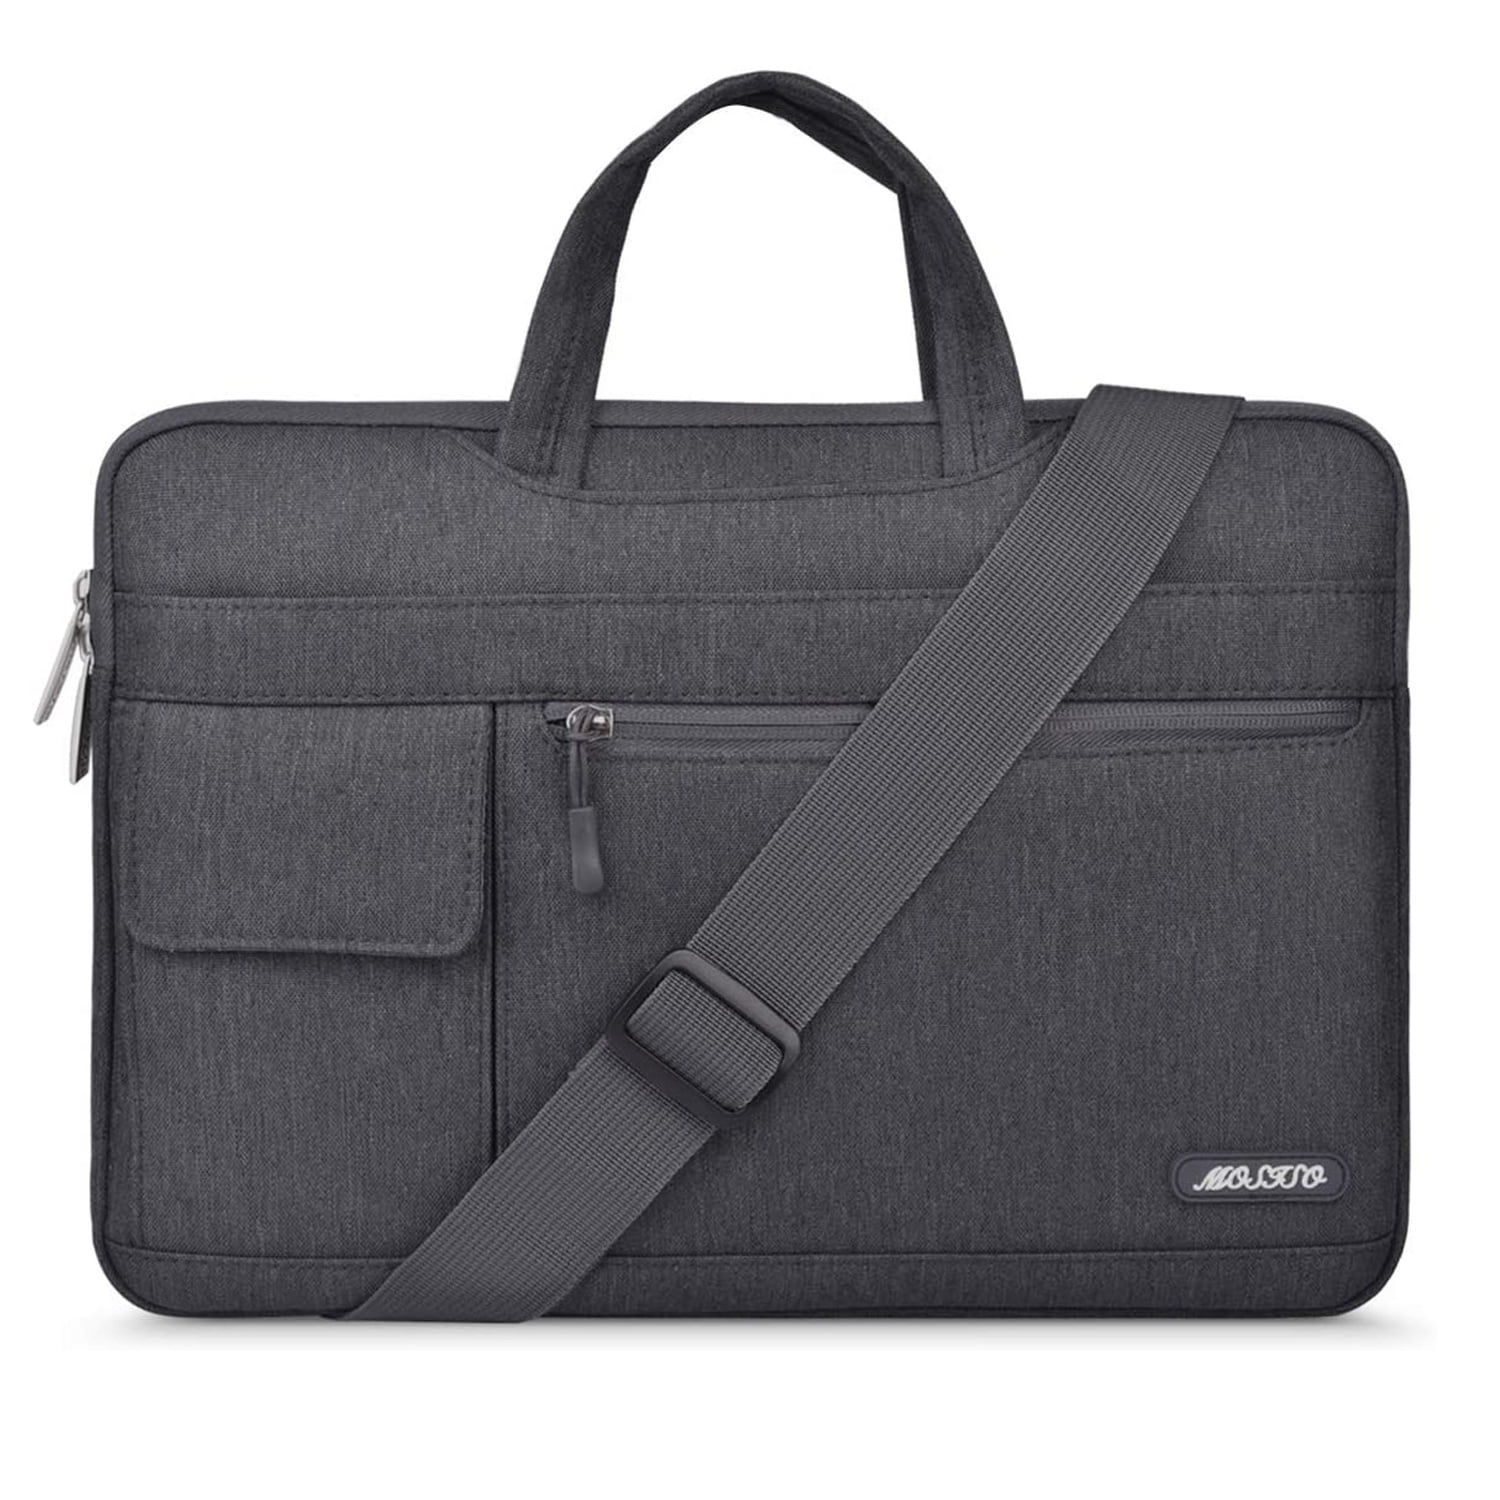 Briefcase Messenger Shoulder Bag for Men Women Laptop Bag Black Dog Bath Bathing Black Small 15-15.4 Inch Laptop Case College Students Business PEO